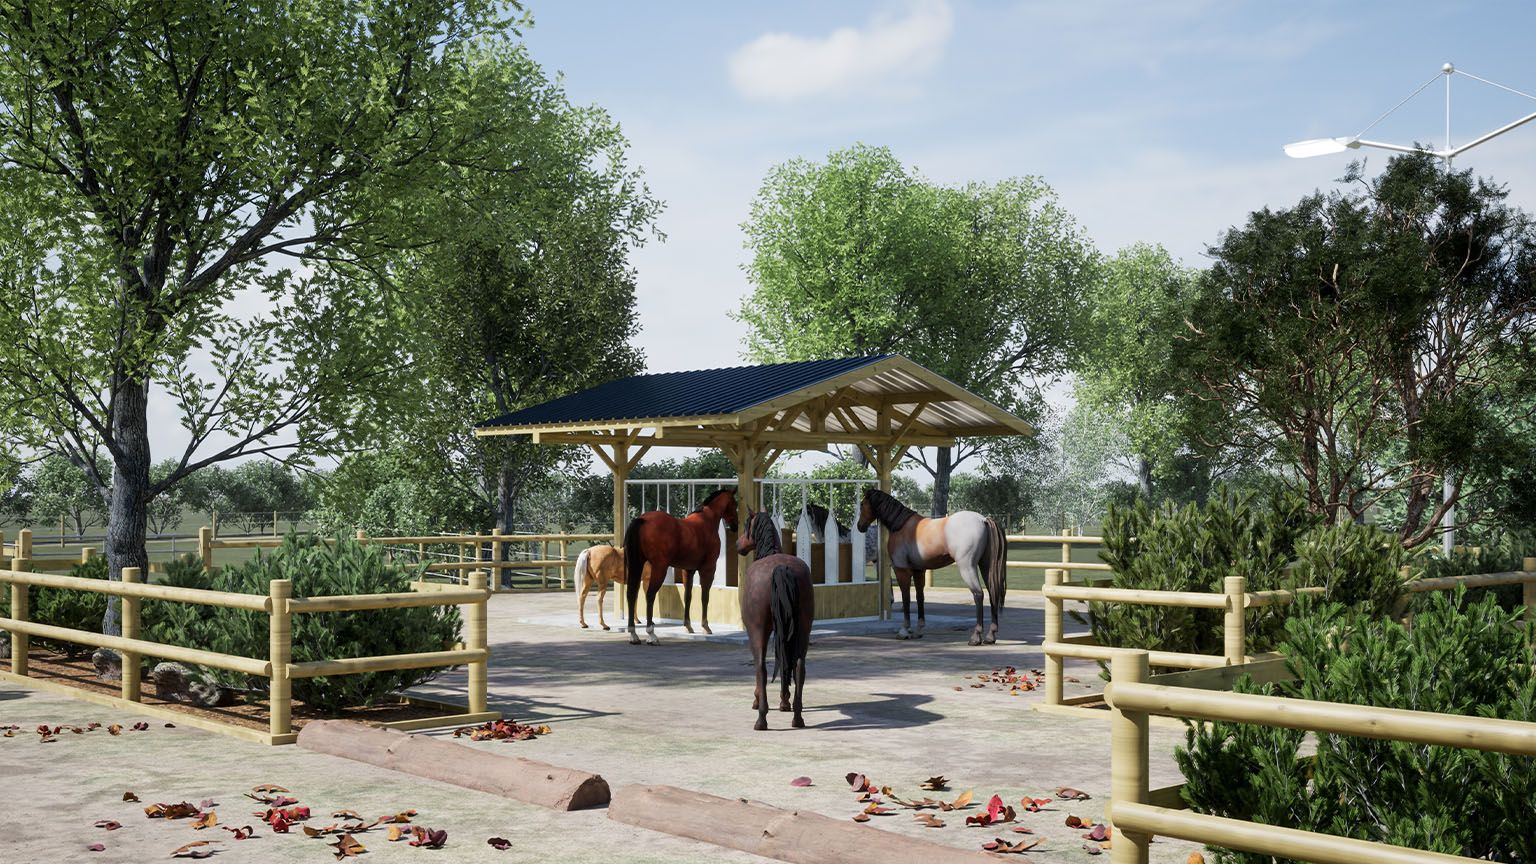 Une école d'équitation innovante en visuels 3D